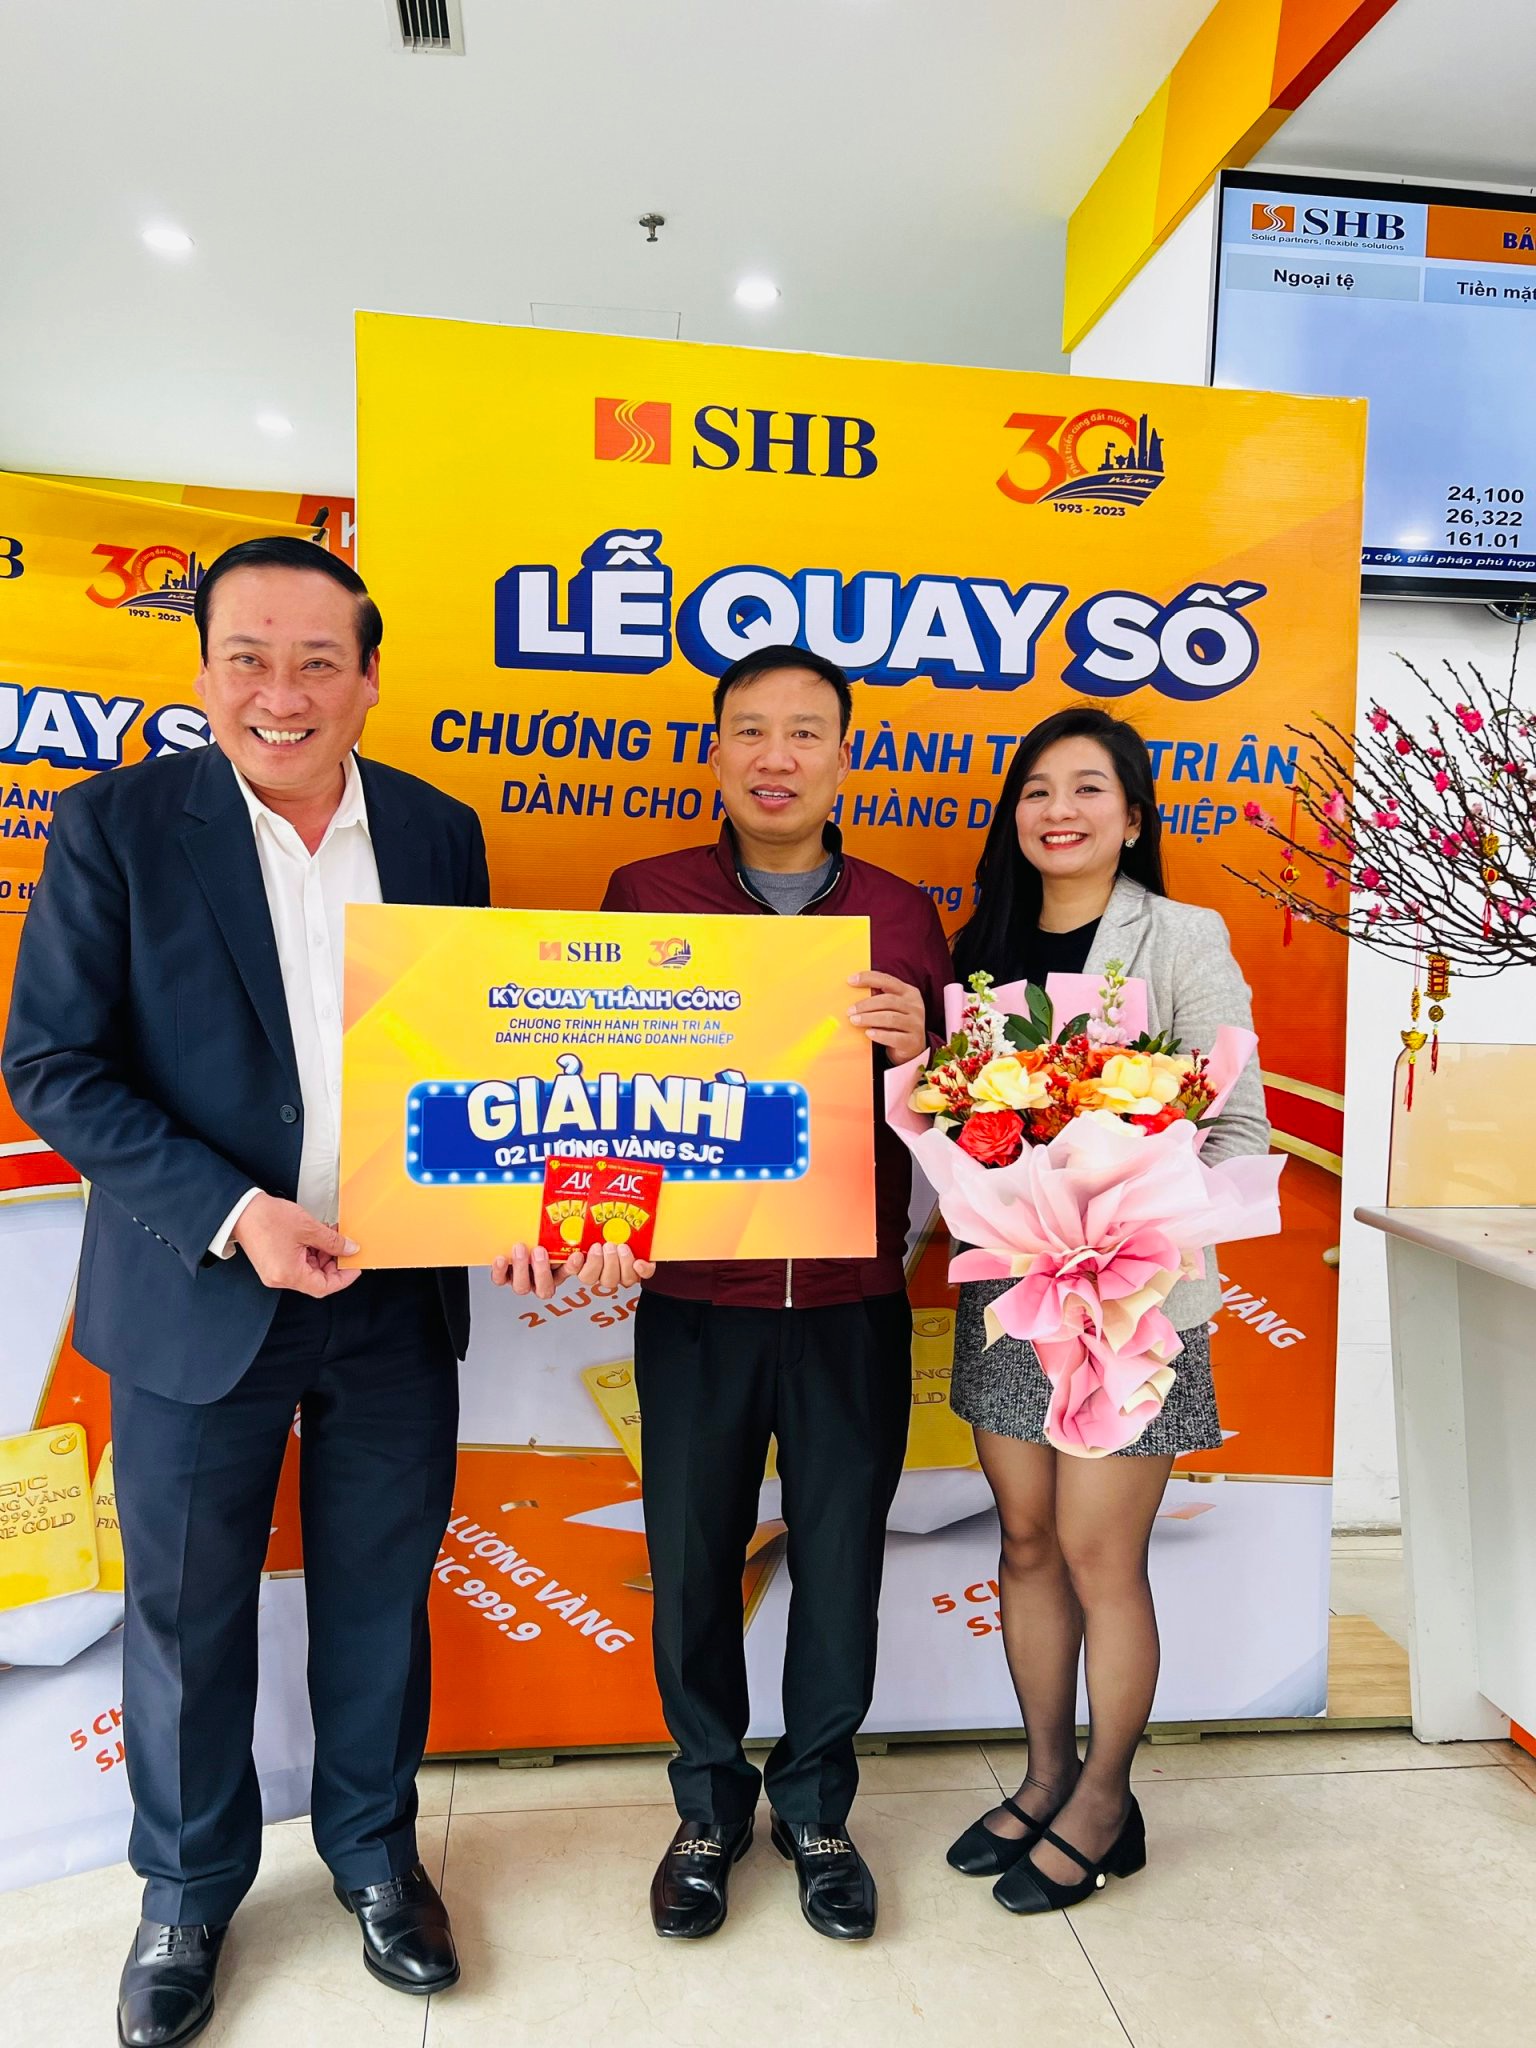 Đại diện SHB CN Nghệ An trao giải Nhì kỳ quay Thành Công trị giá 02 lượng vàng SJC 999.9 cho khách hàng